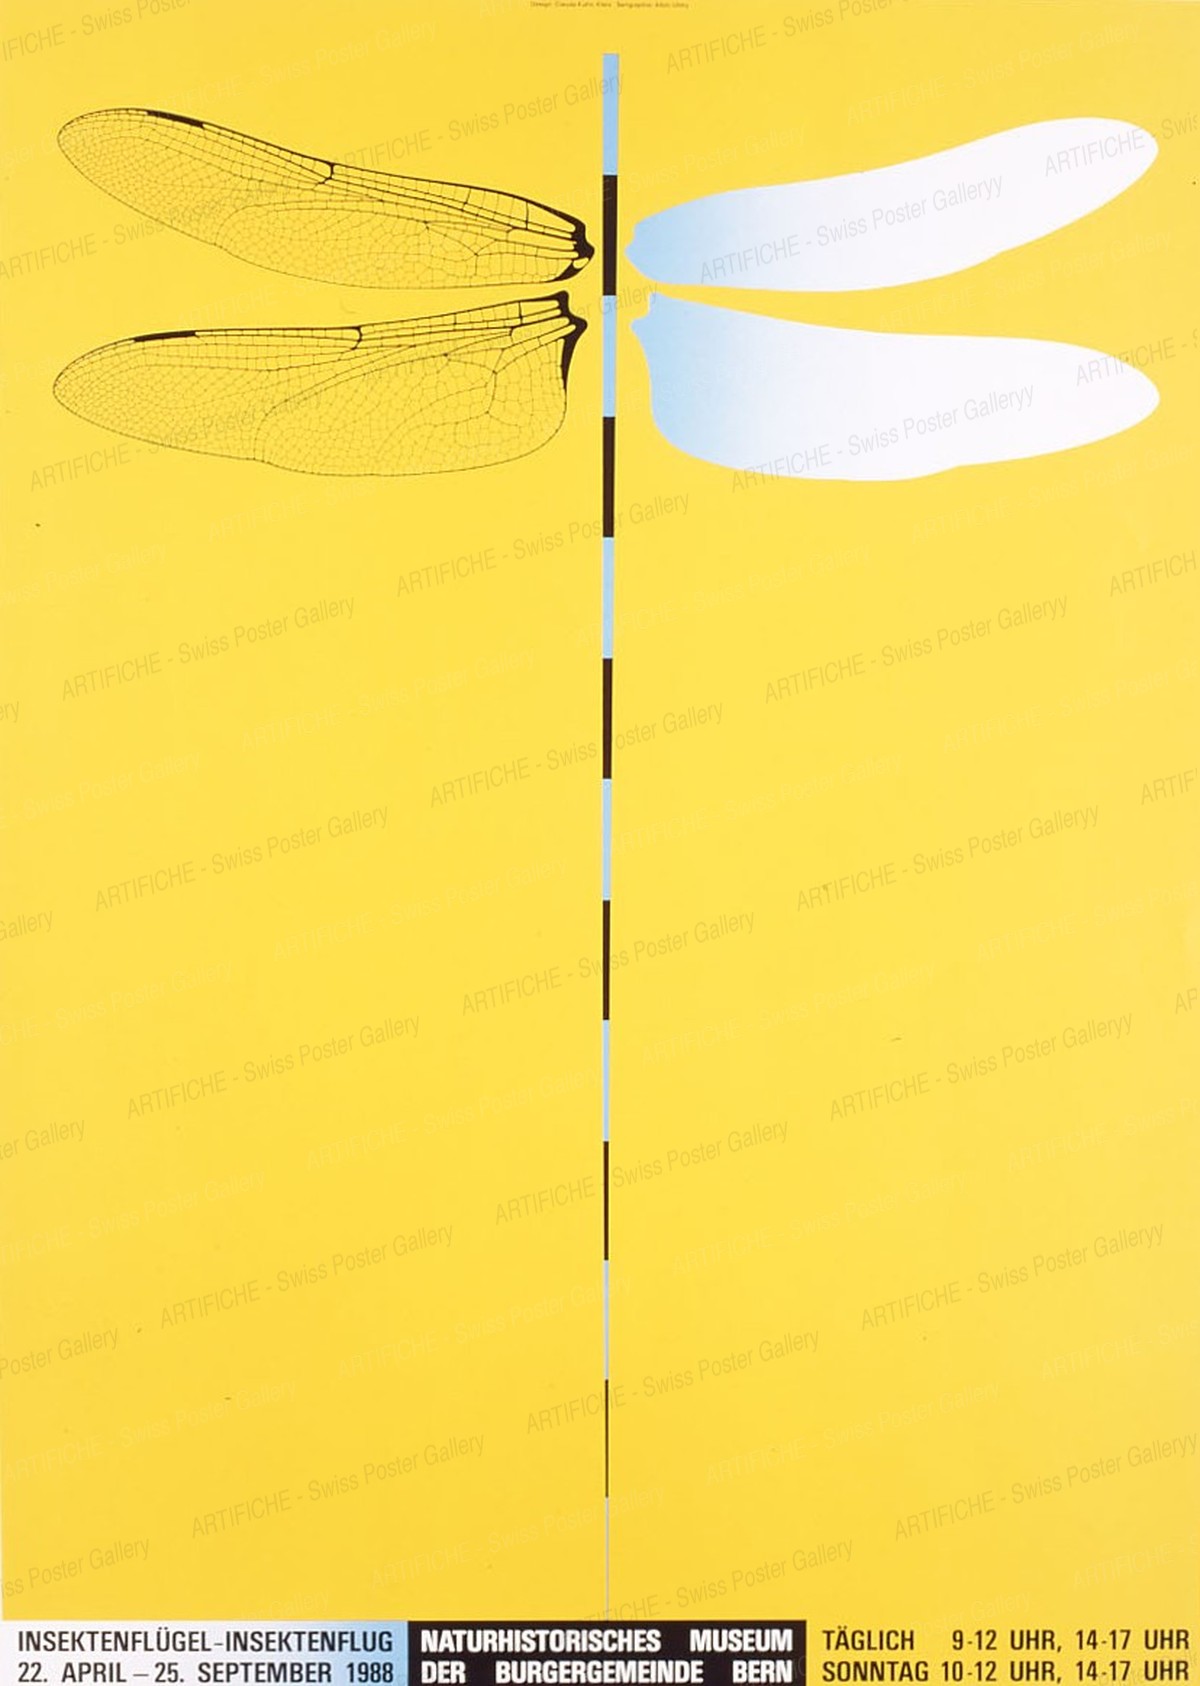 Naturhistorisches Museum der Burgergemeinde Bern – Insektenflügel Insektenflug, Claude Kuhn